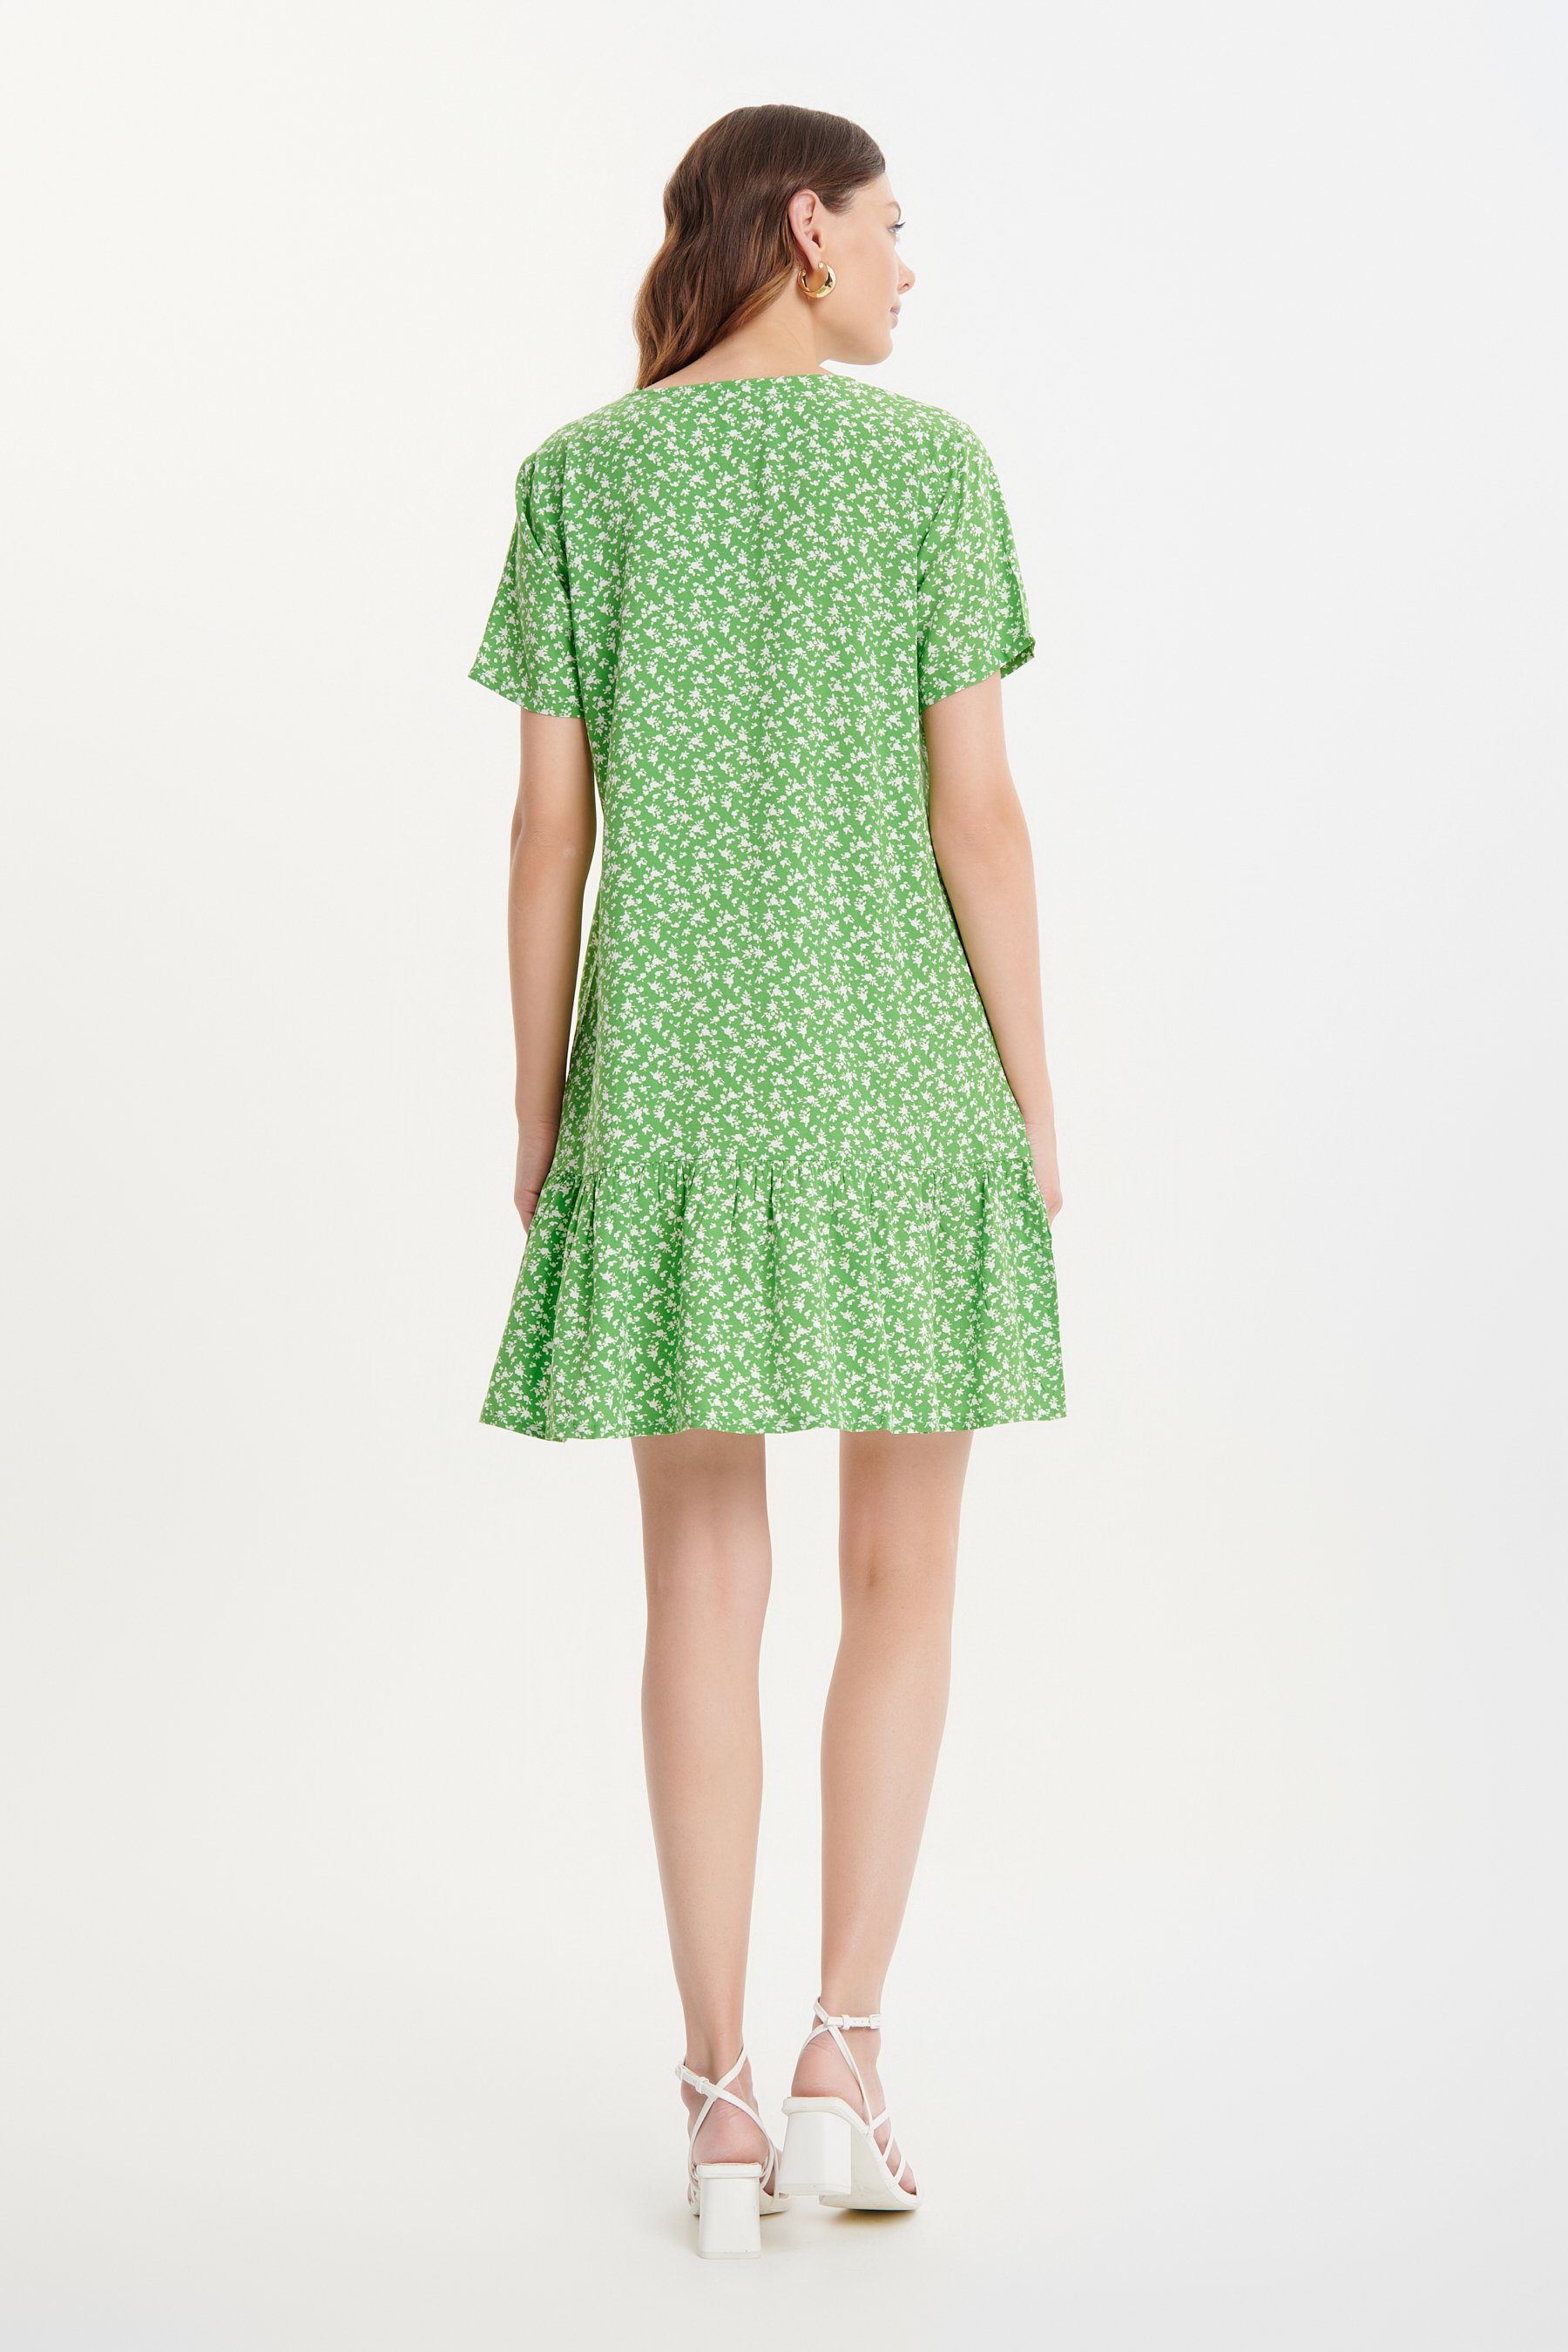 Zielona sukienka mini w drobne kwiaty